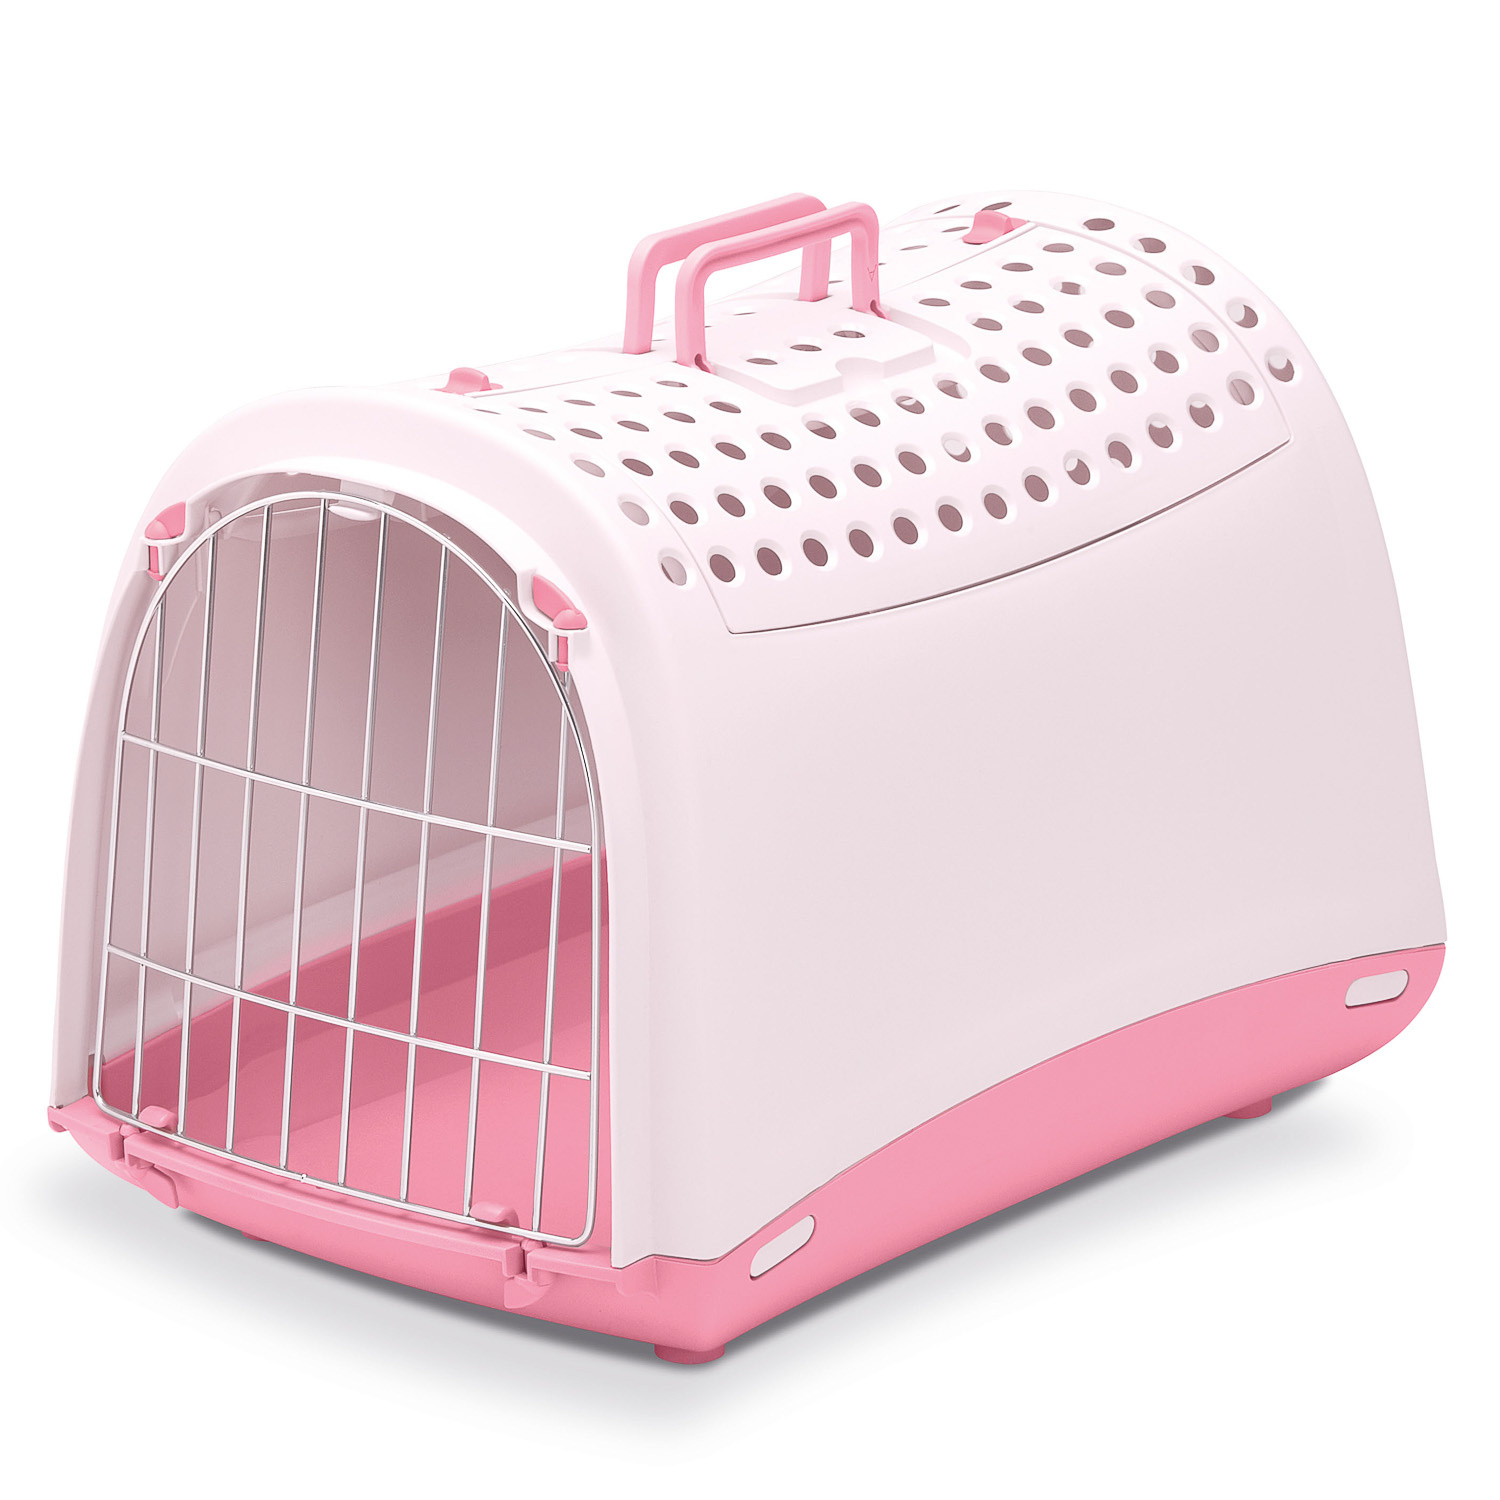 IMAC IMAC переноска для кошек и собак, нежно-розовый (1,37 кг) imac переноска linus для кошек и собак мелкого размера 50х32х34 5 см пепельно розовая